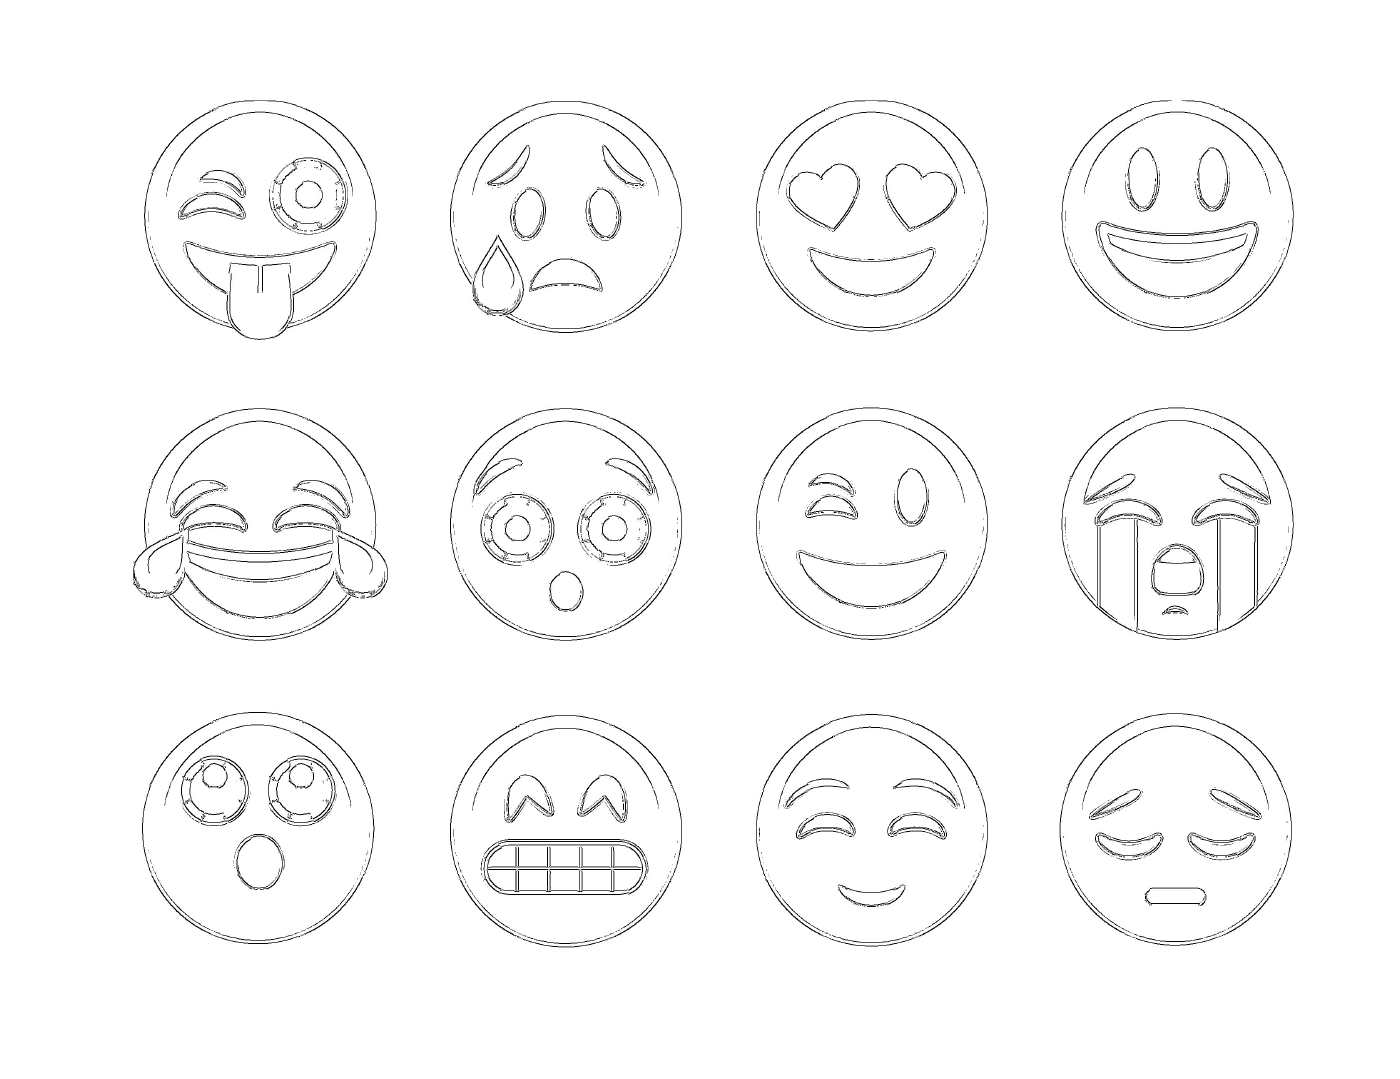  一组12种不同的表情 